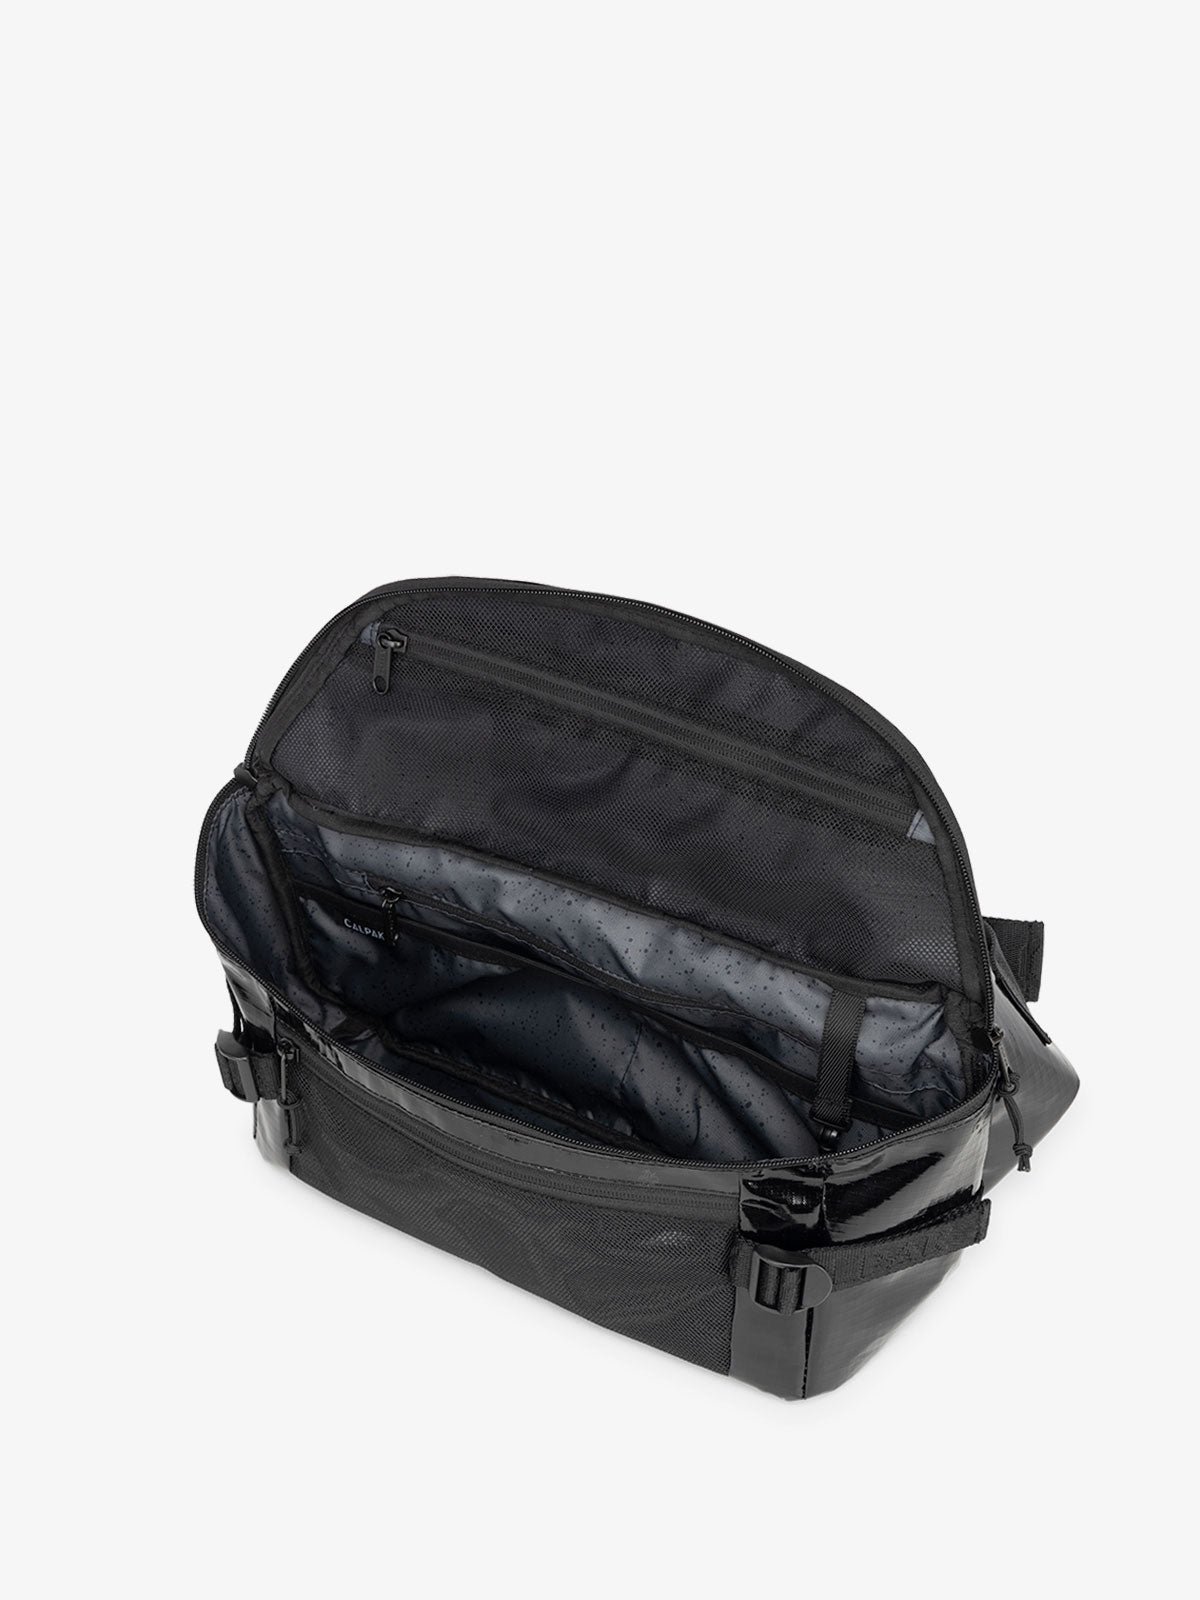 sling bag for travel